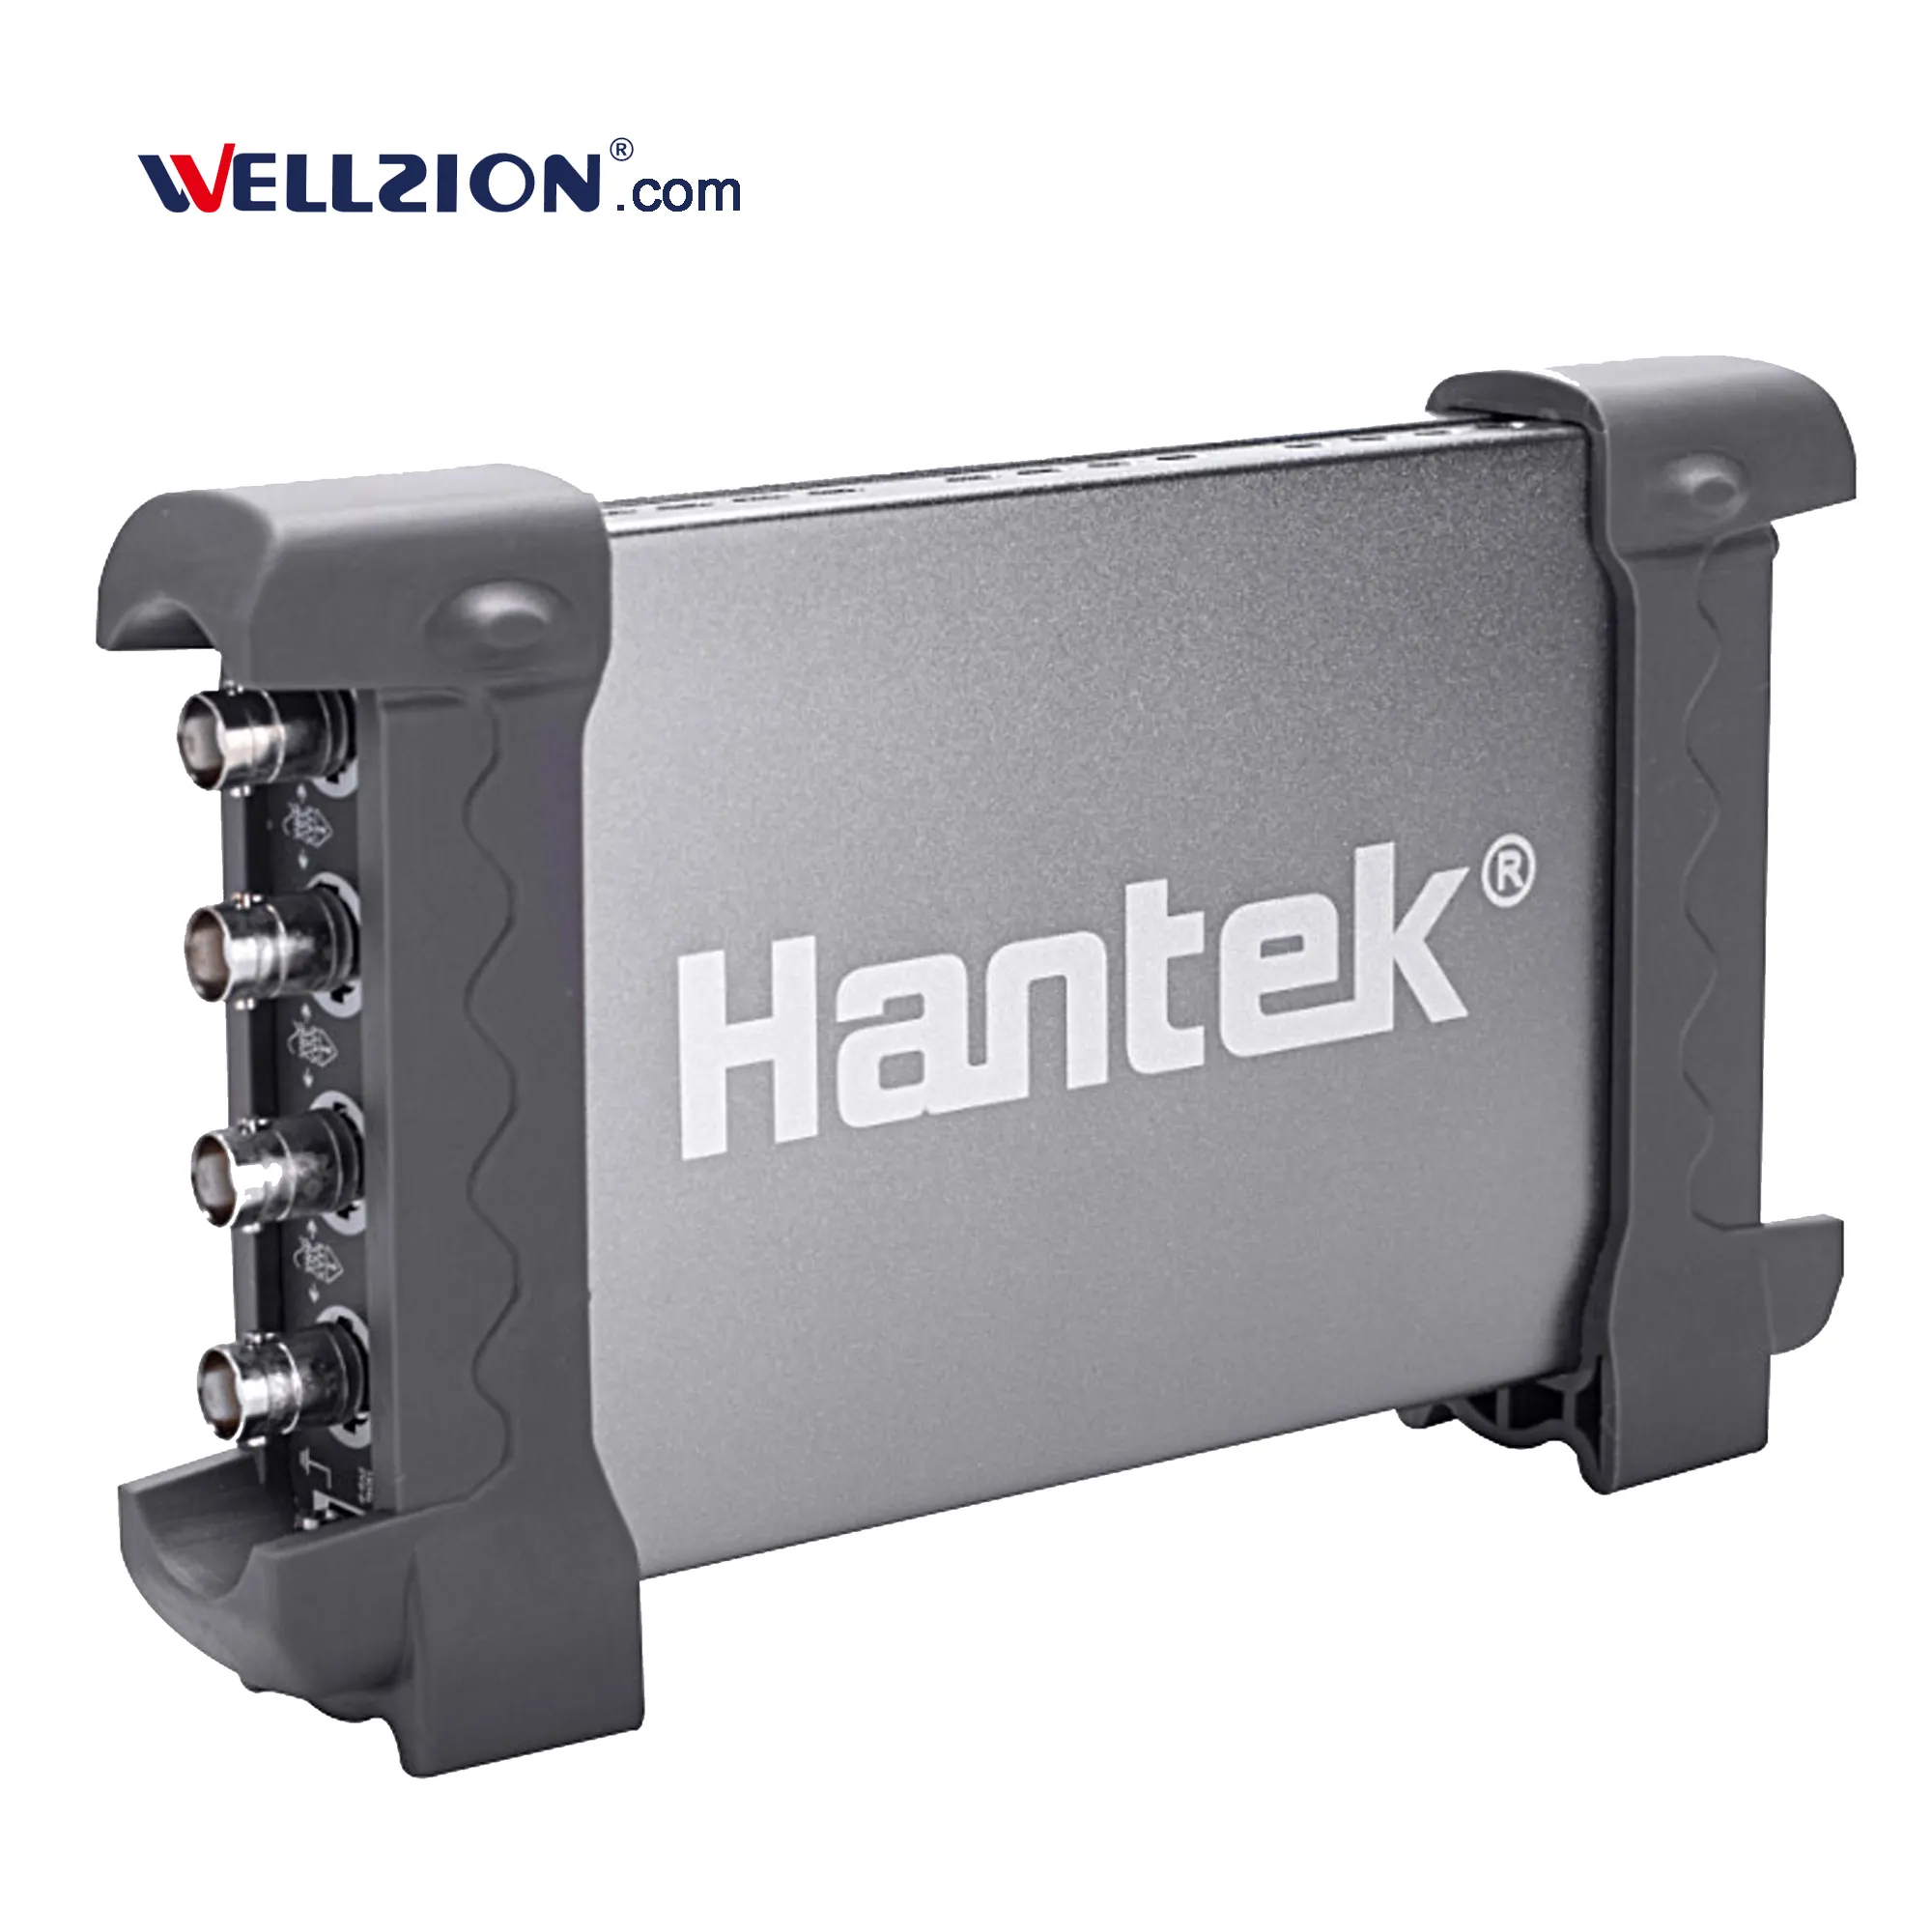 Hantek6074BE, 70 MHz 4 ערוץ hantek אוסצילוסקופ רכב